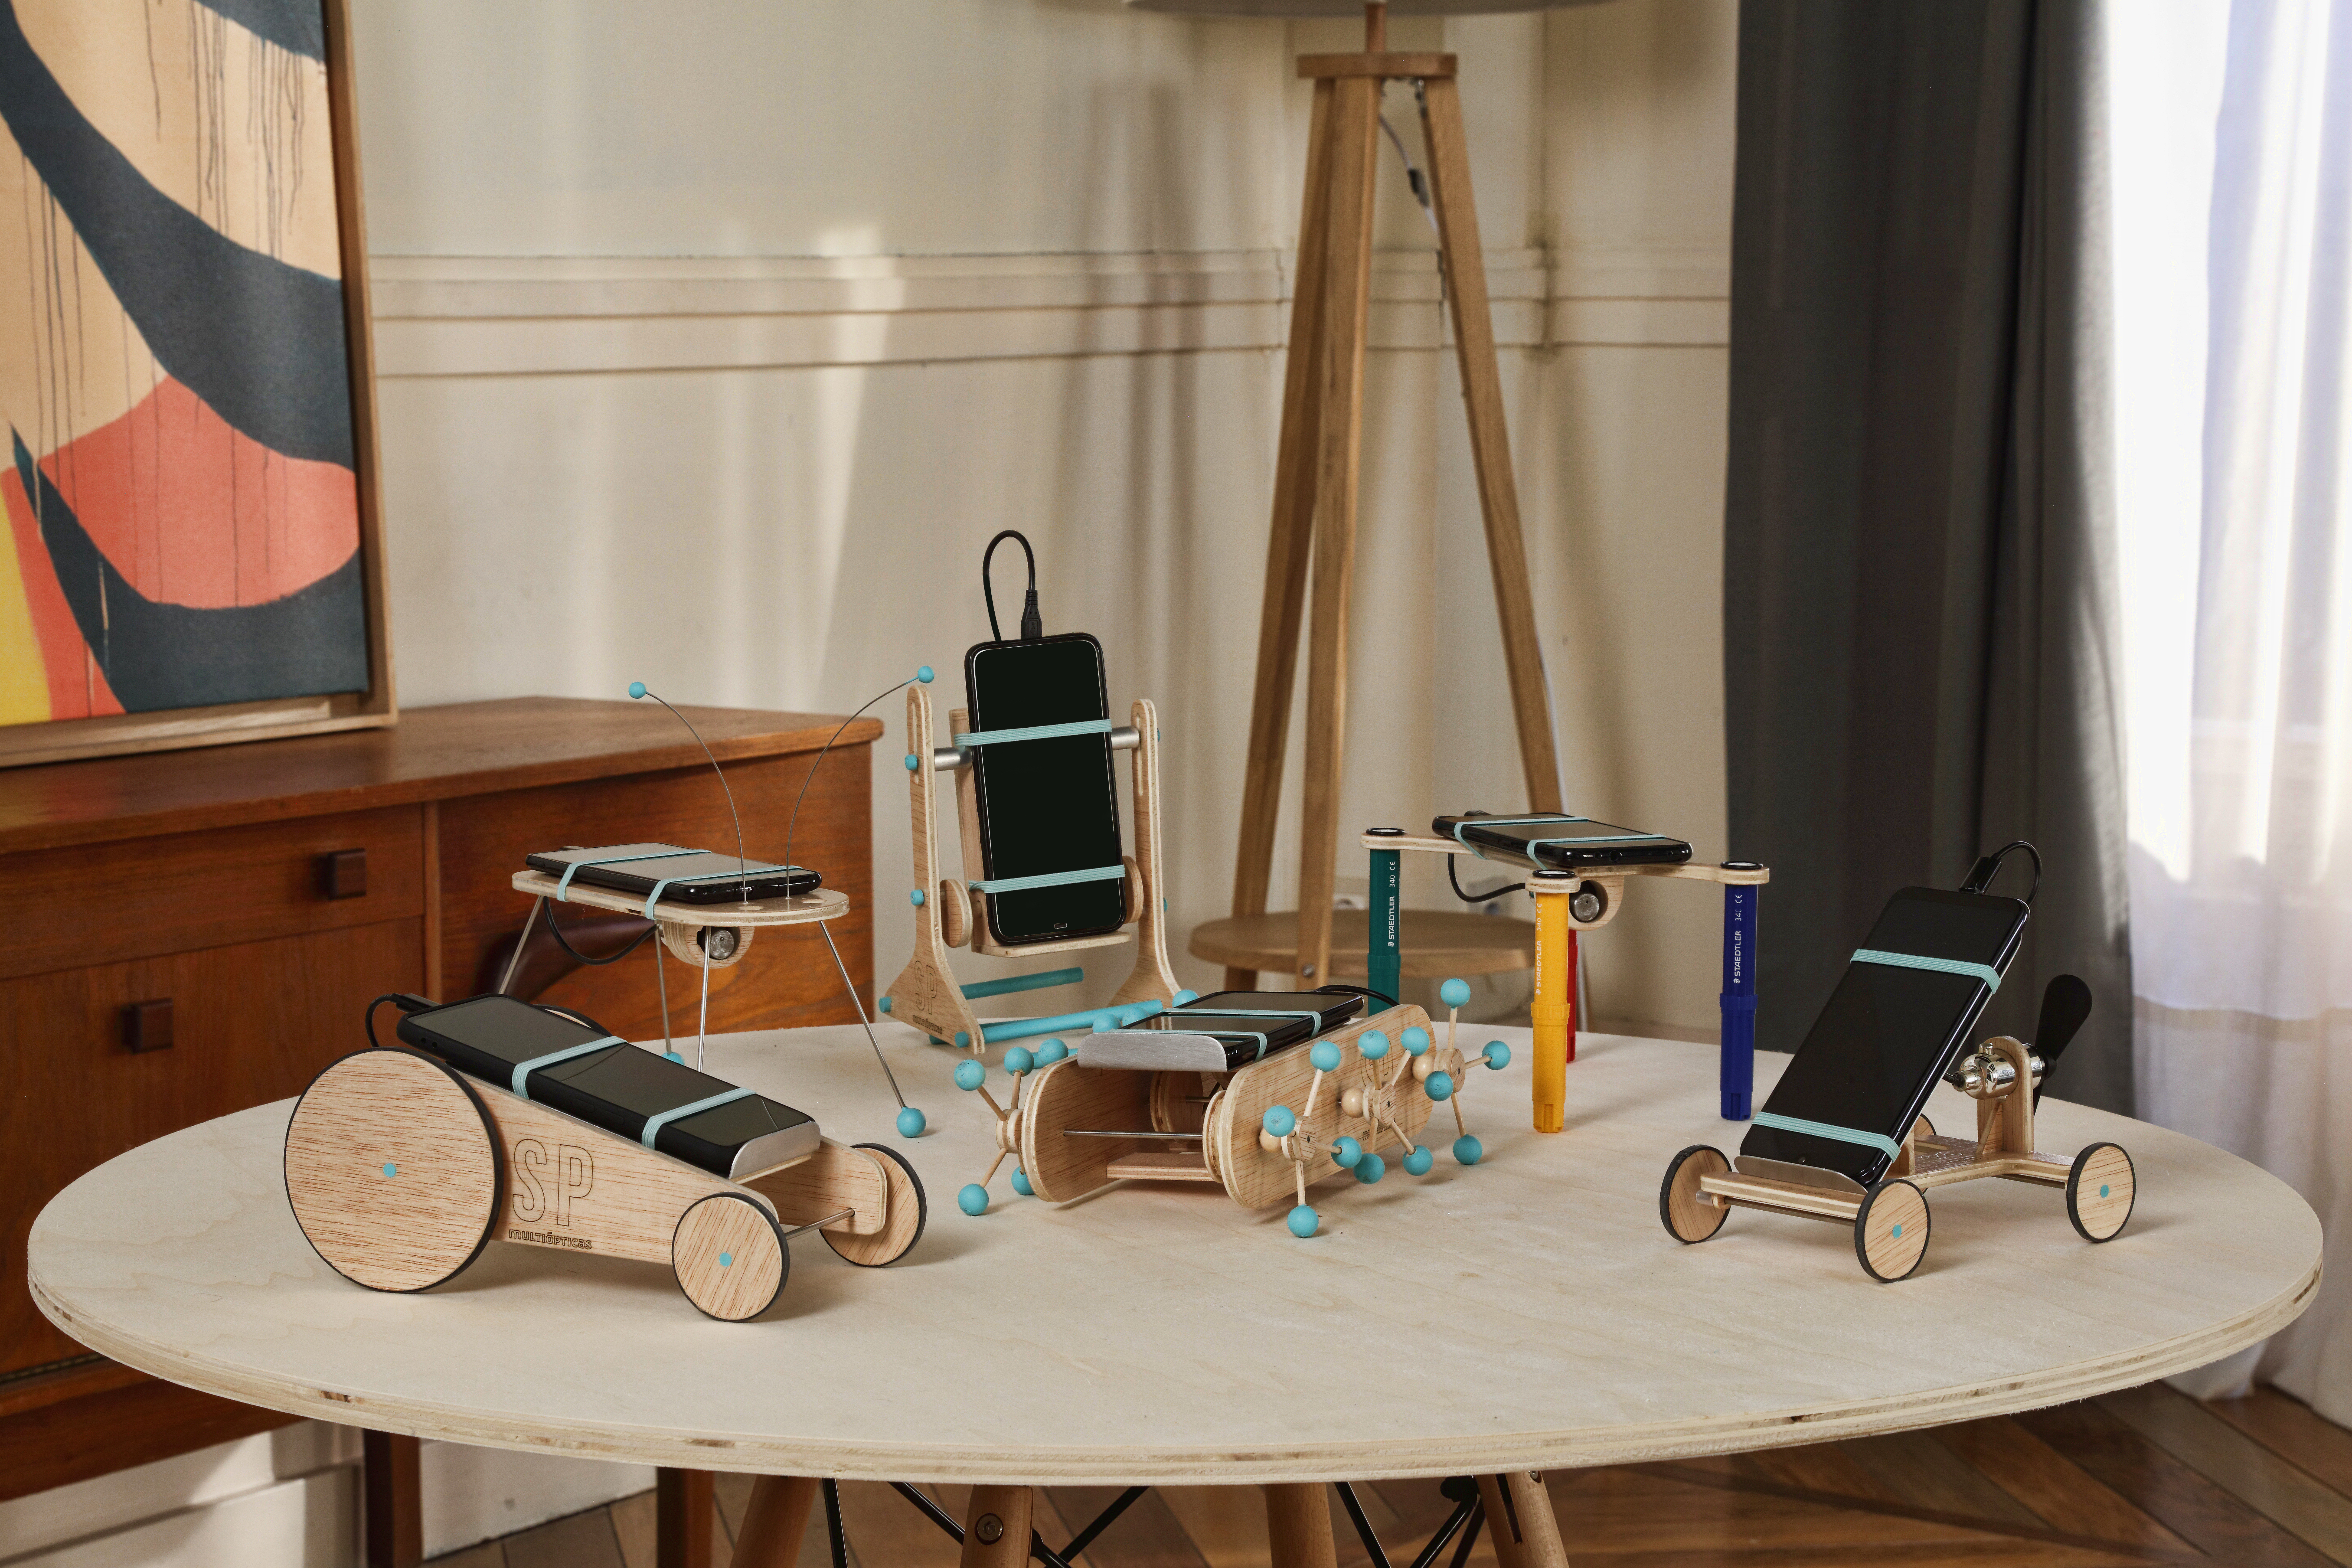 Multiópticas crea los primeros juguetes analógicos que funcionan con la batería del móvil